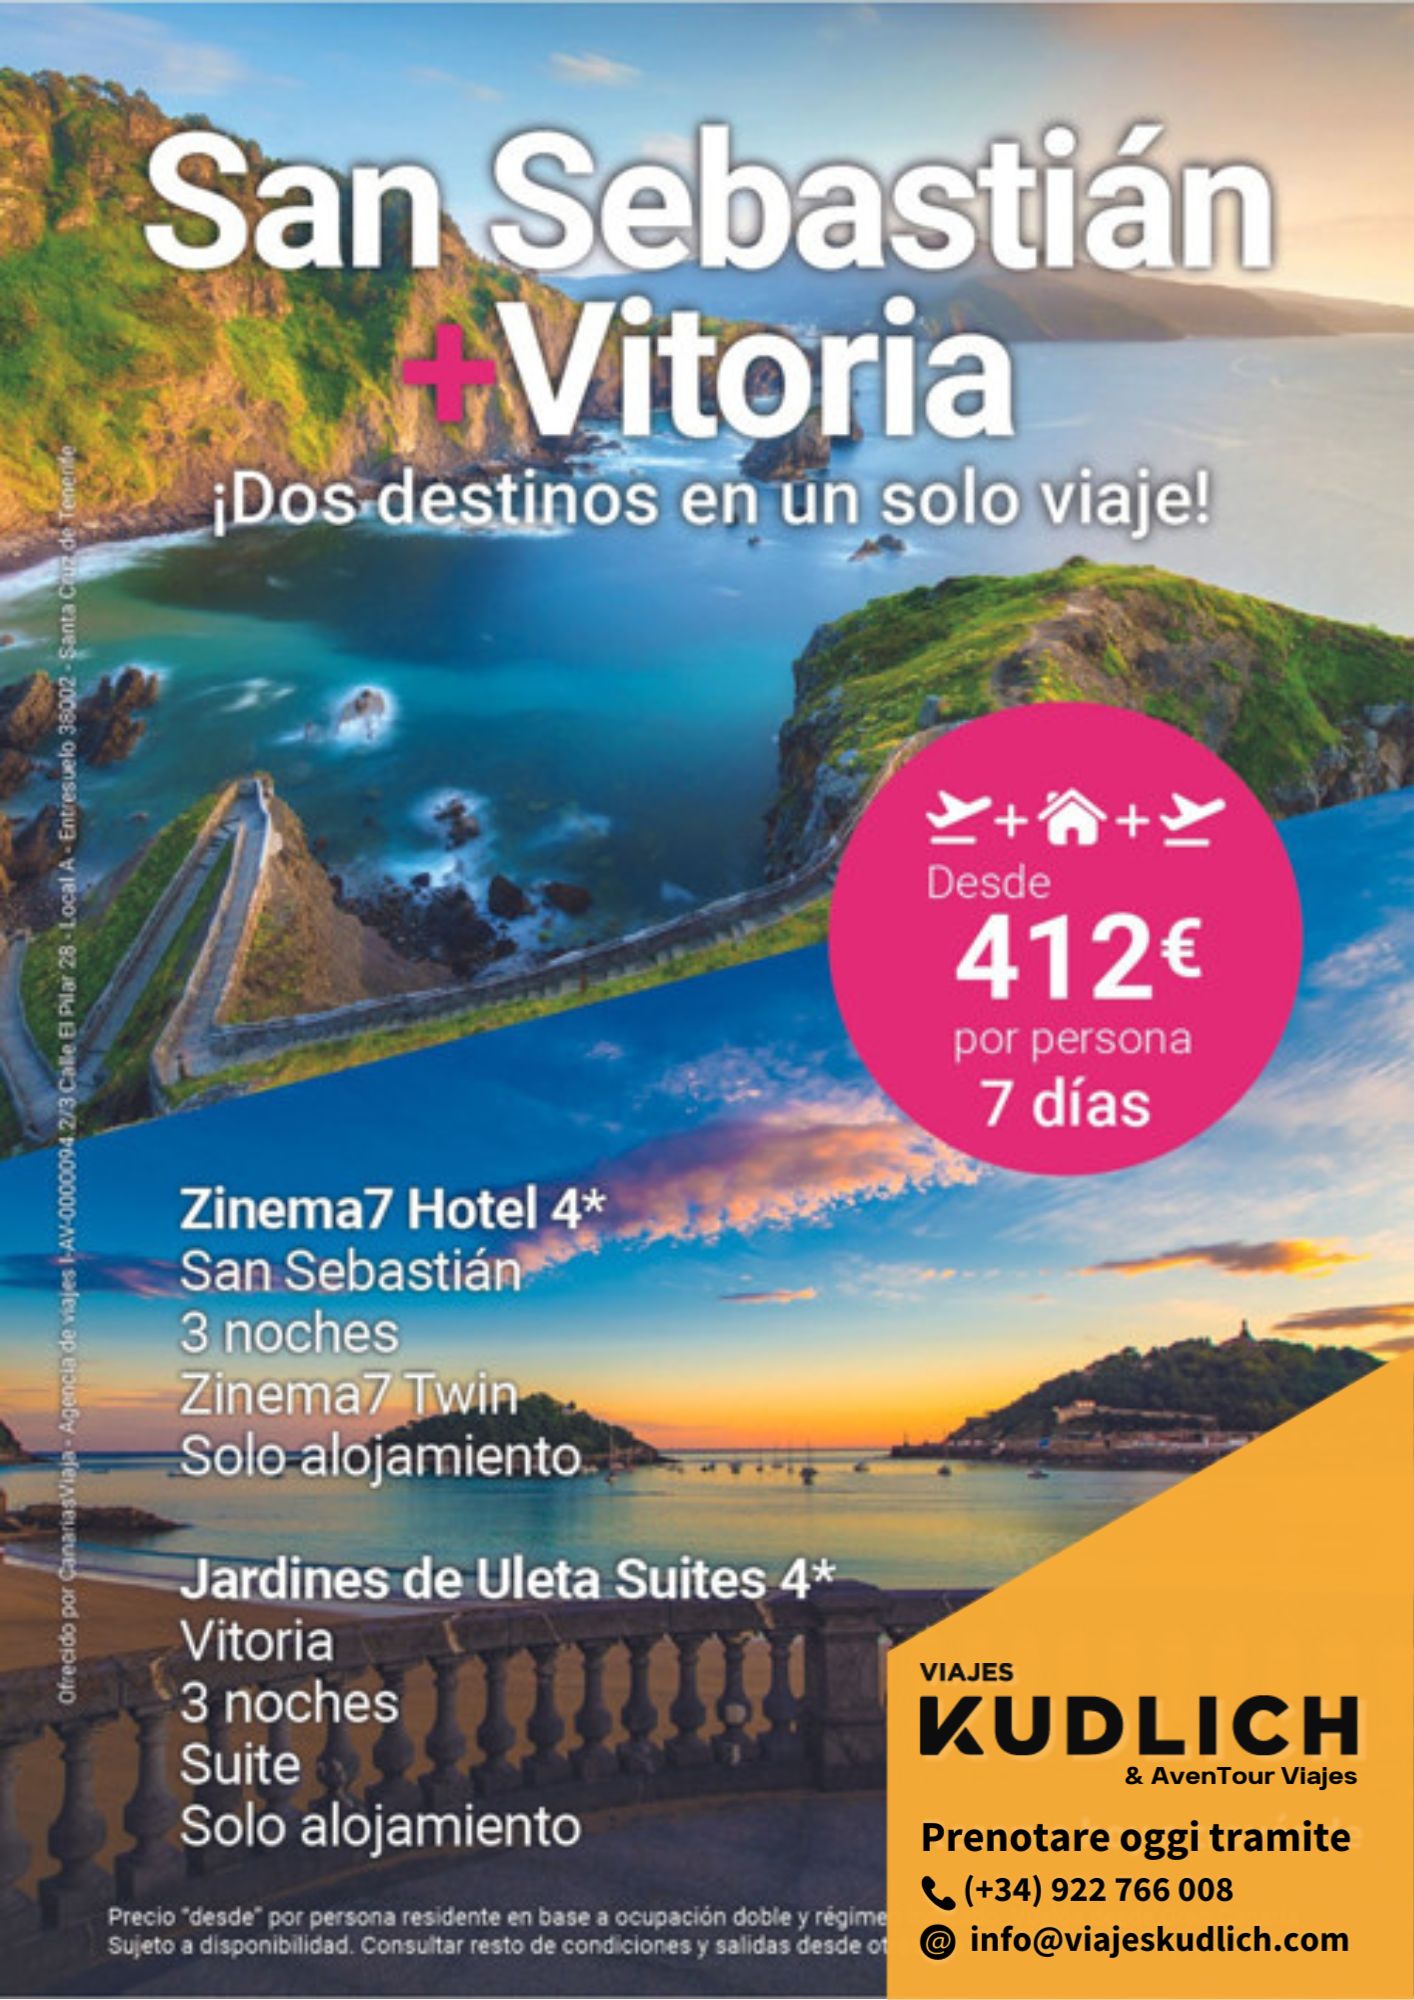 Offerta di viaggio multi-destinazione: San Sebastián e Vitoria. 7 giorni / 6 notti. Da € 412 a persona.